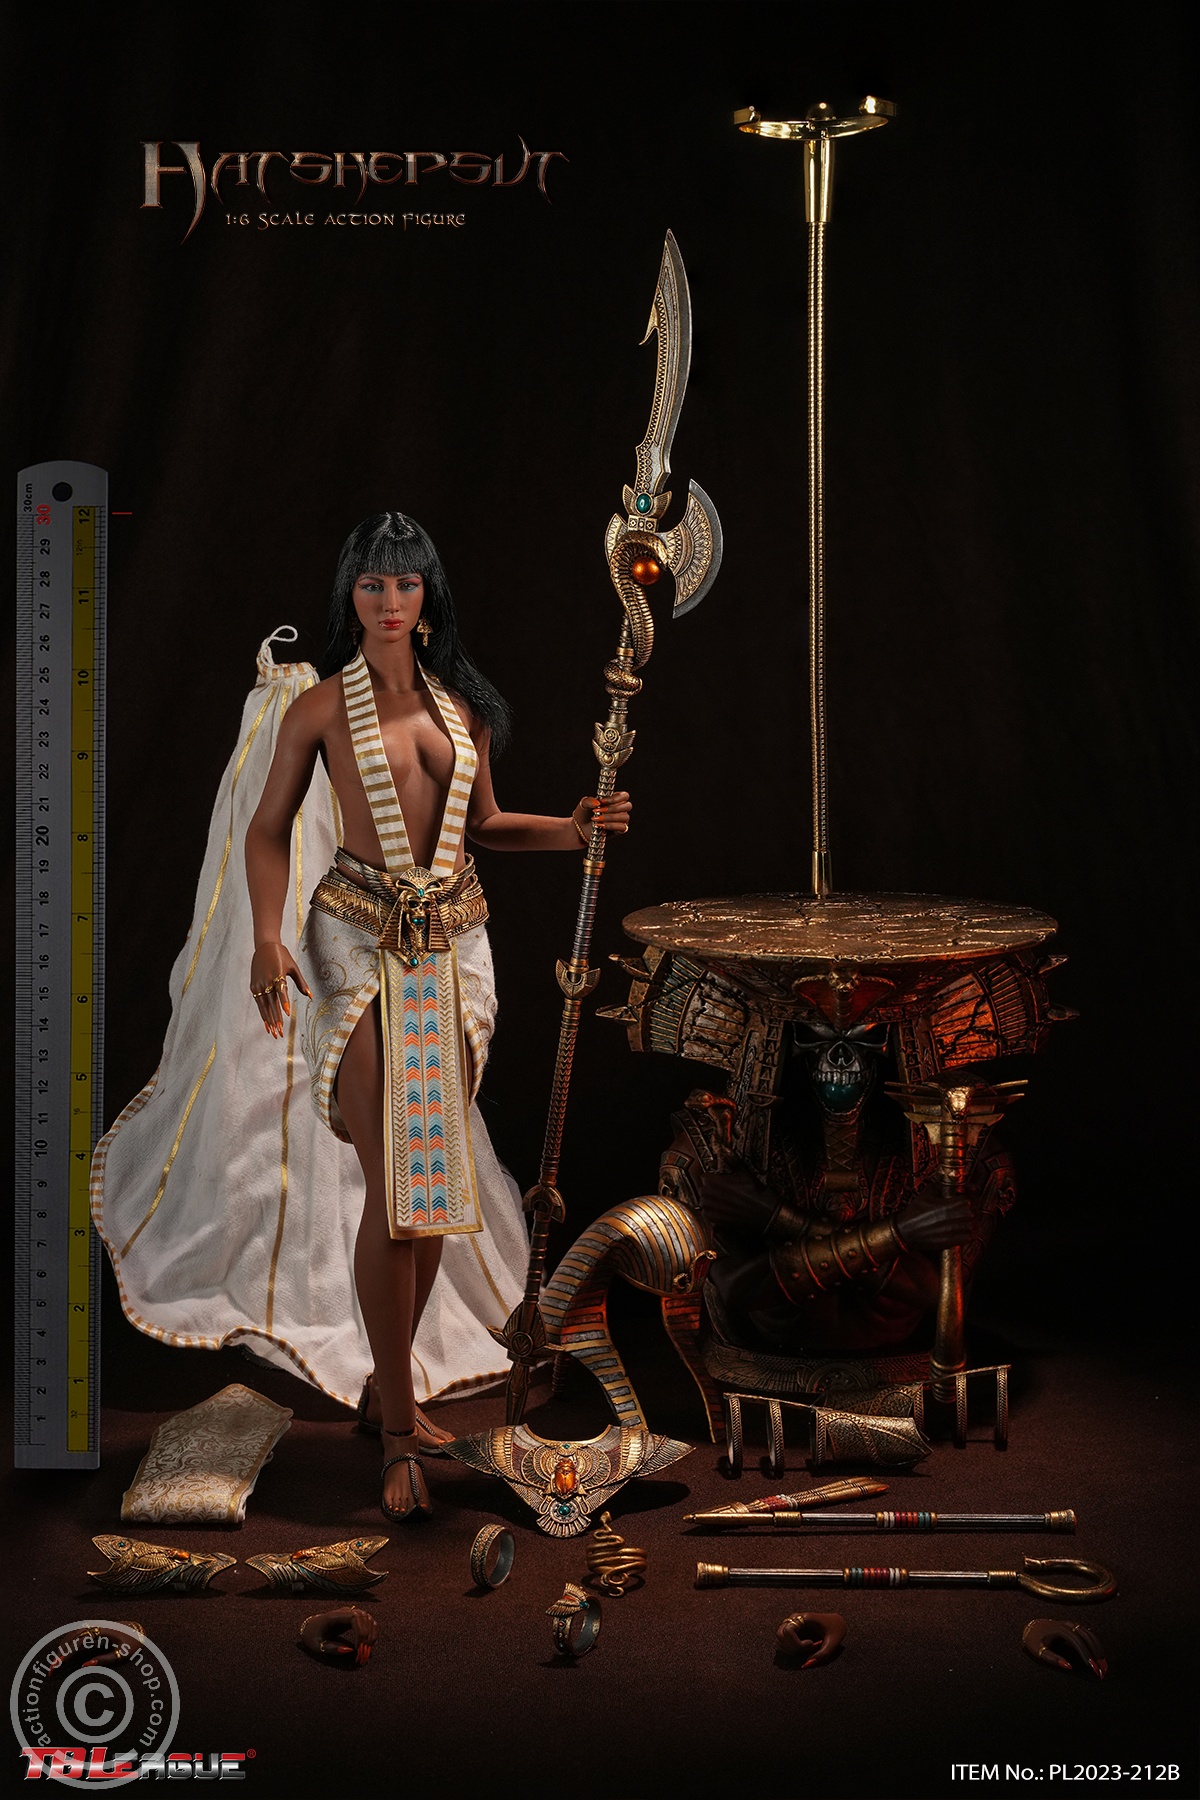 Hatshepsut - Wife of Pharaoh Thutmose II